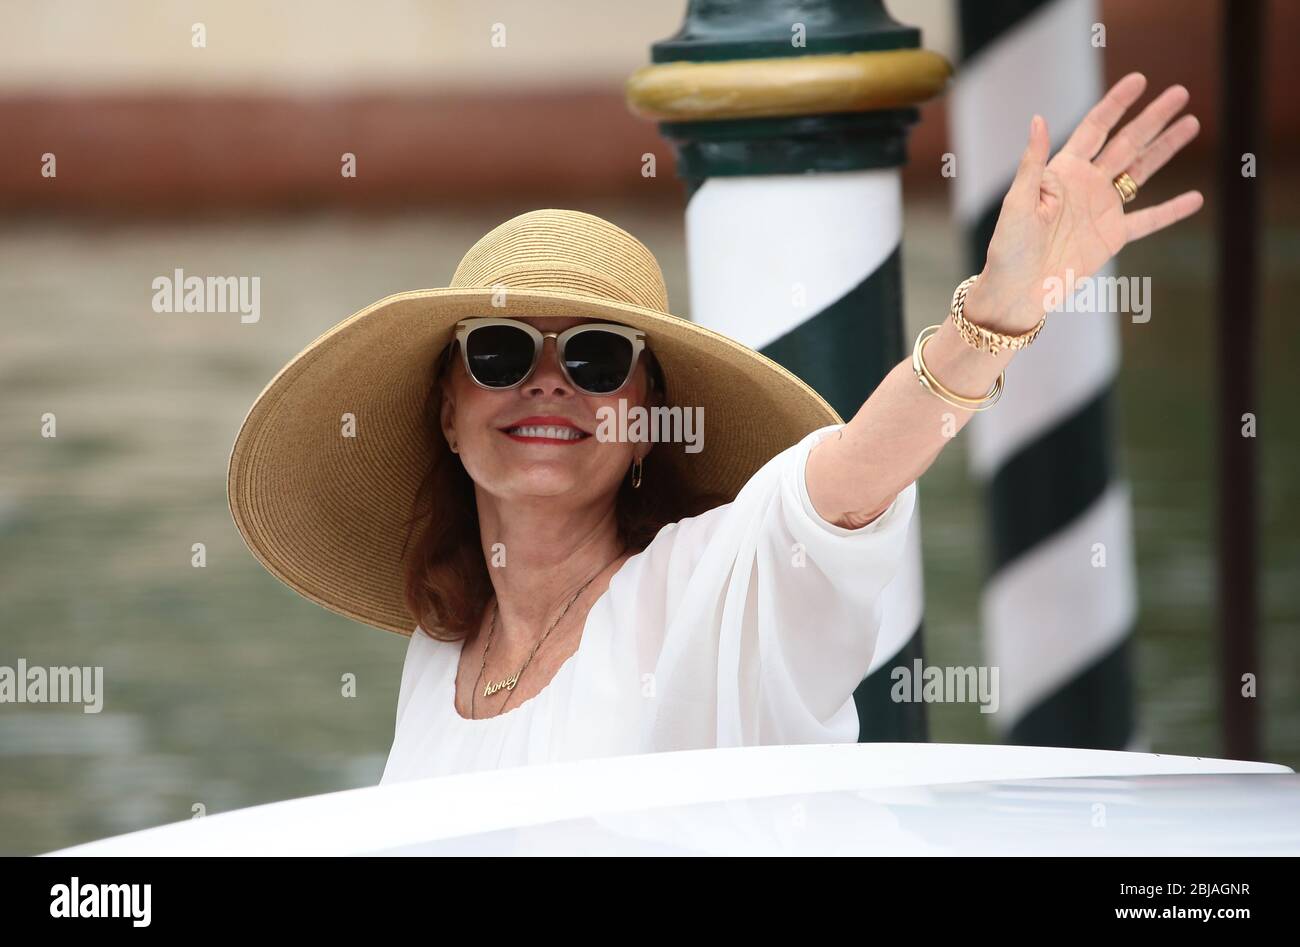 VENISE, ITALIE - SEPTEMBRE 02: Susan Sarandon sont vues pendant les 74. Festival du film de Venise le 2 septembre 2017 à Venise, Italie. Banque D'Images